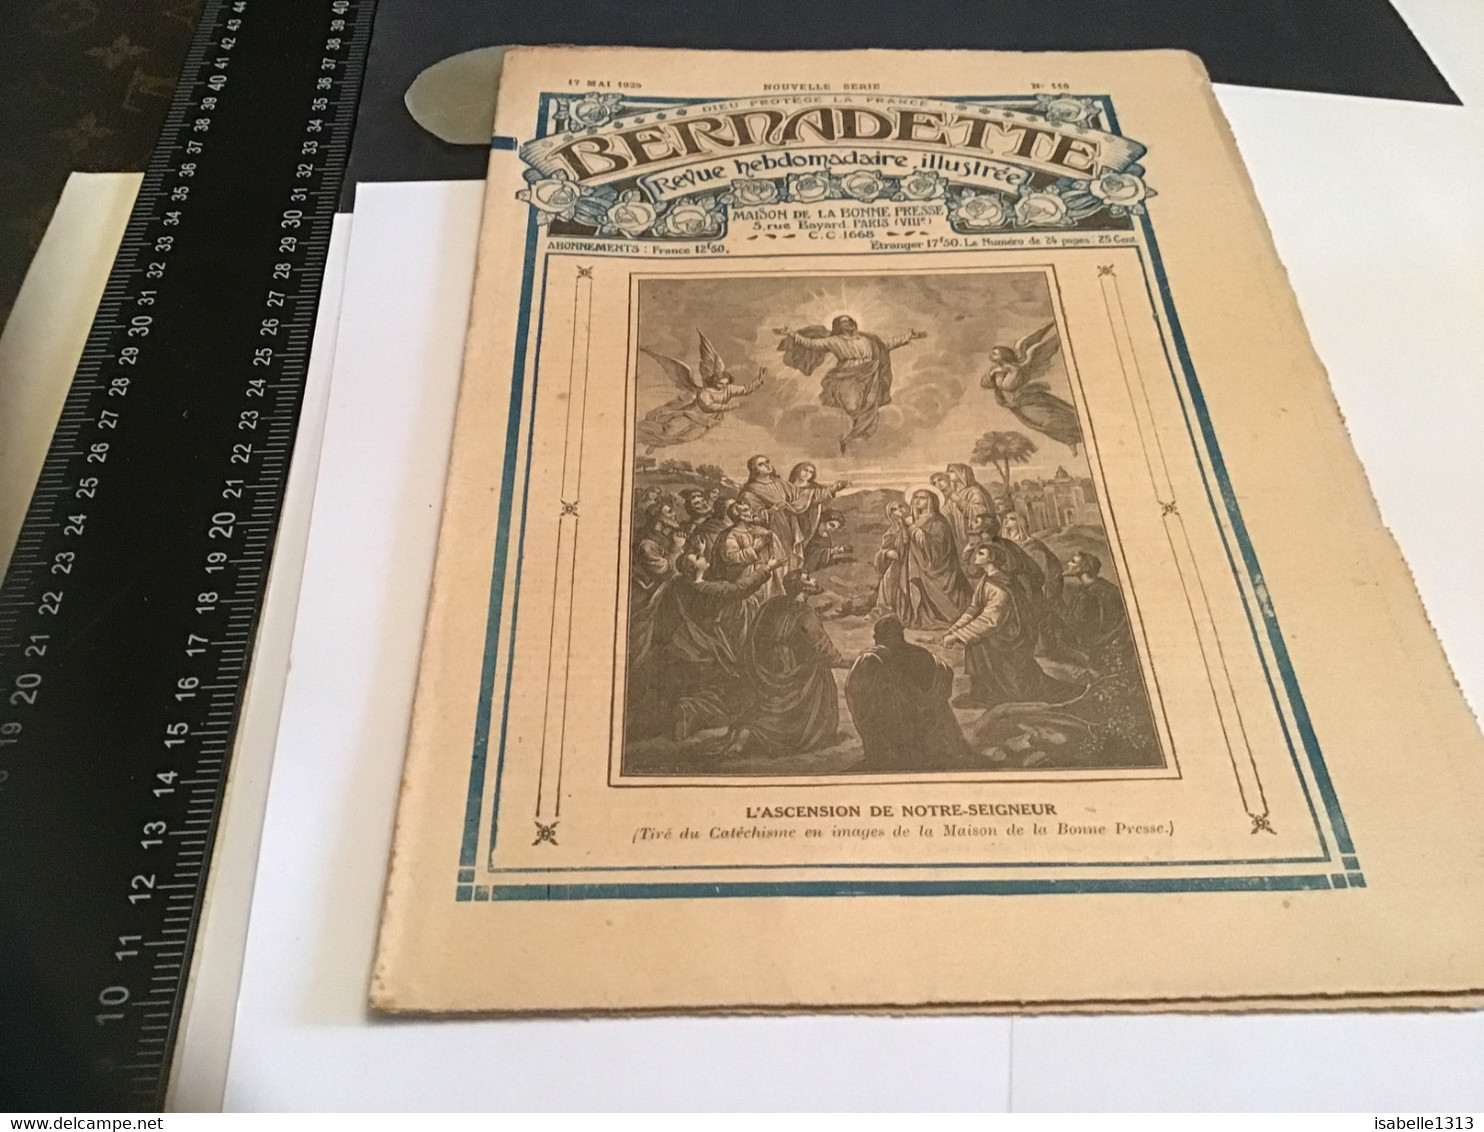 Bernadette Revue Hebdomadaire Illustrée Rare 1925 Numéro 116 Alfred Et Boumaza Bou Maza - Bernadette